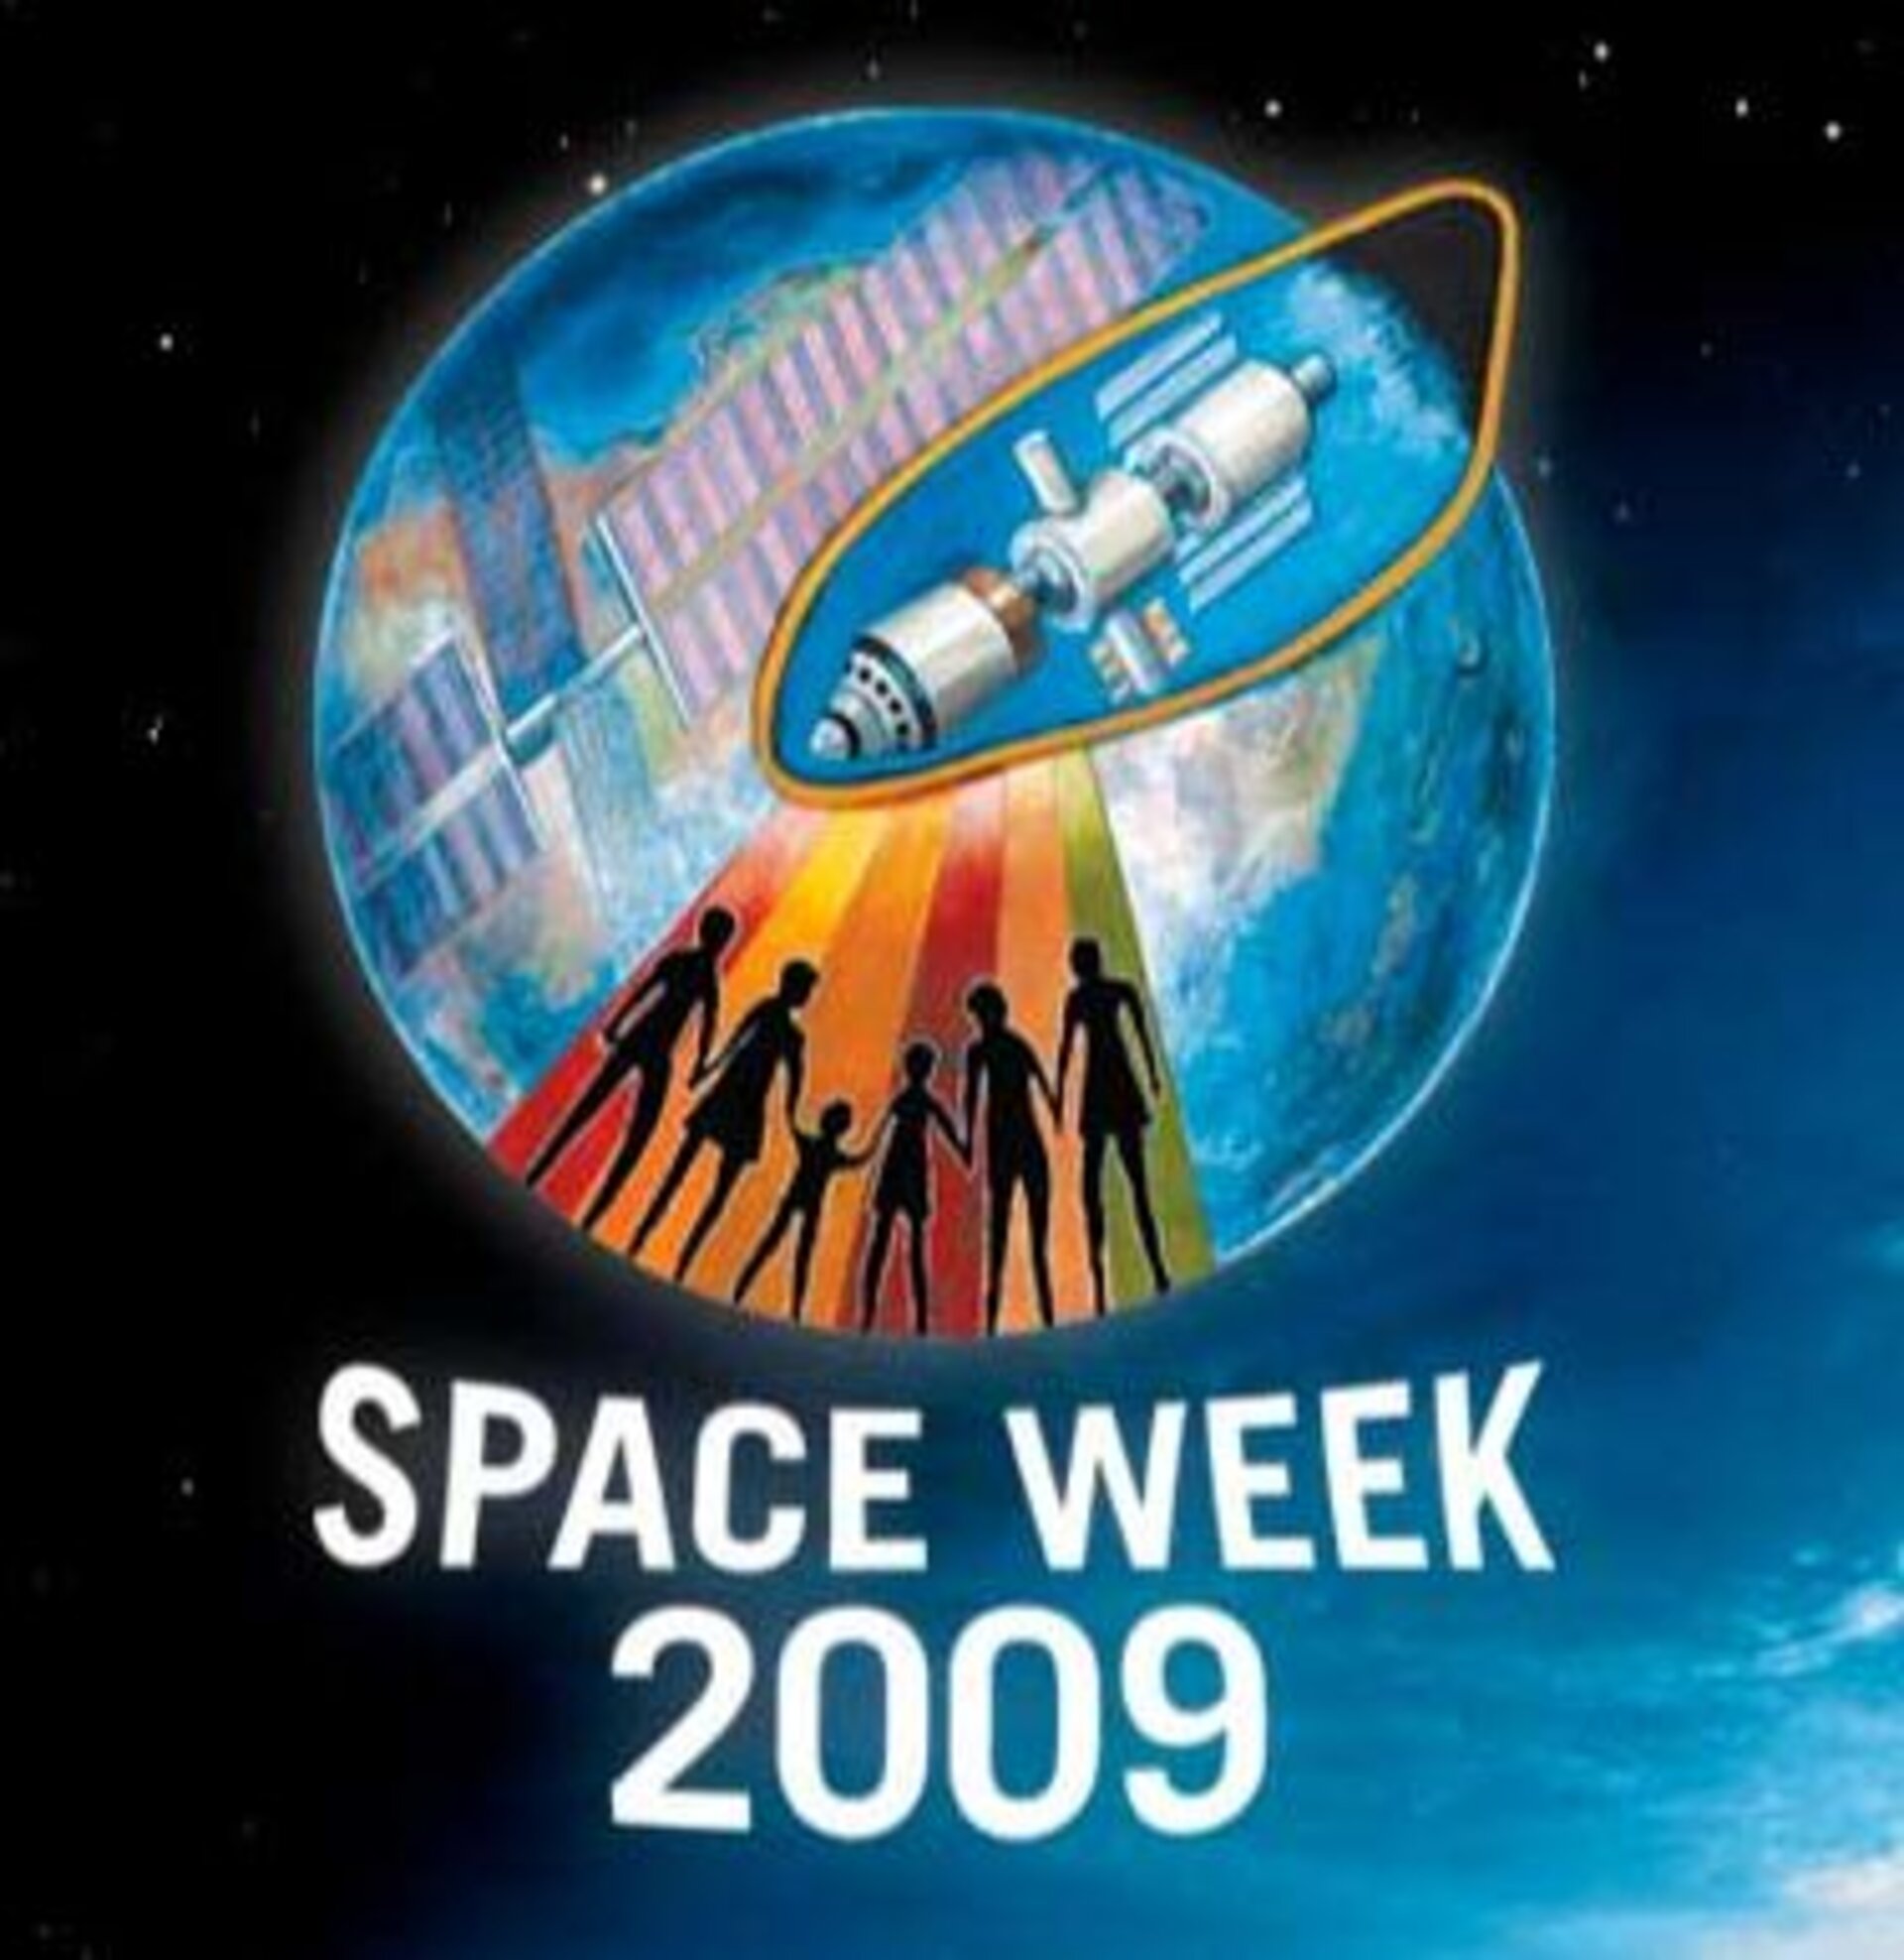 Space Week 2009 logo